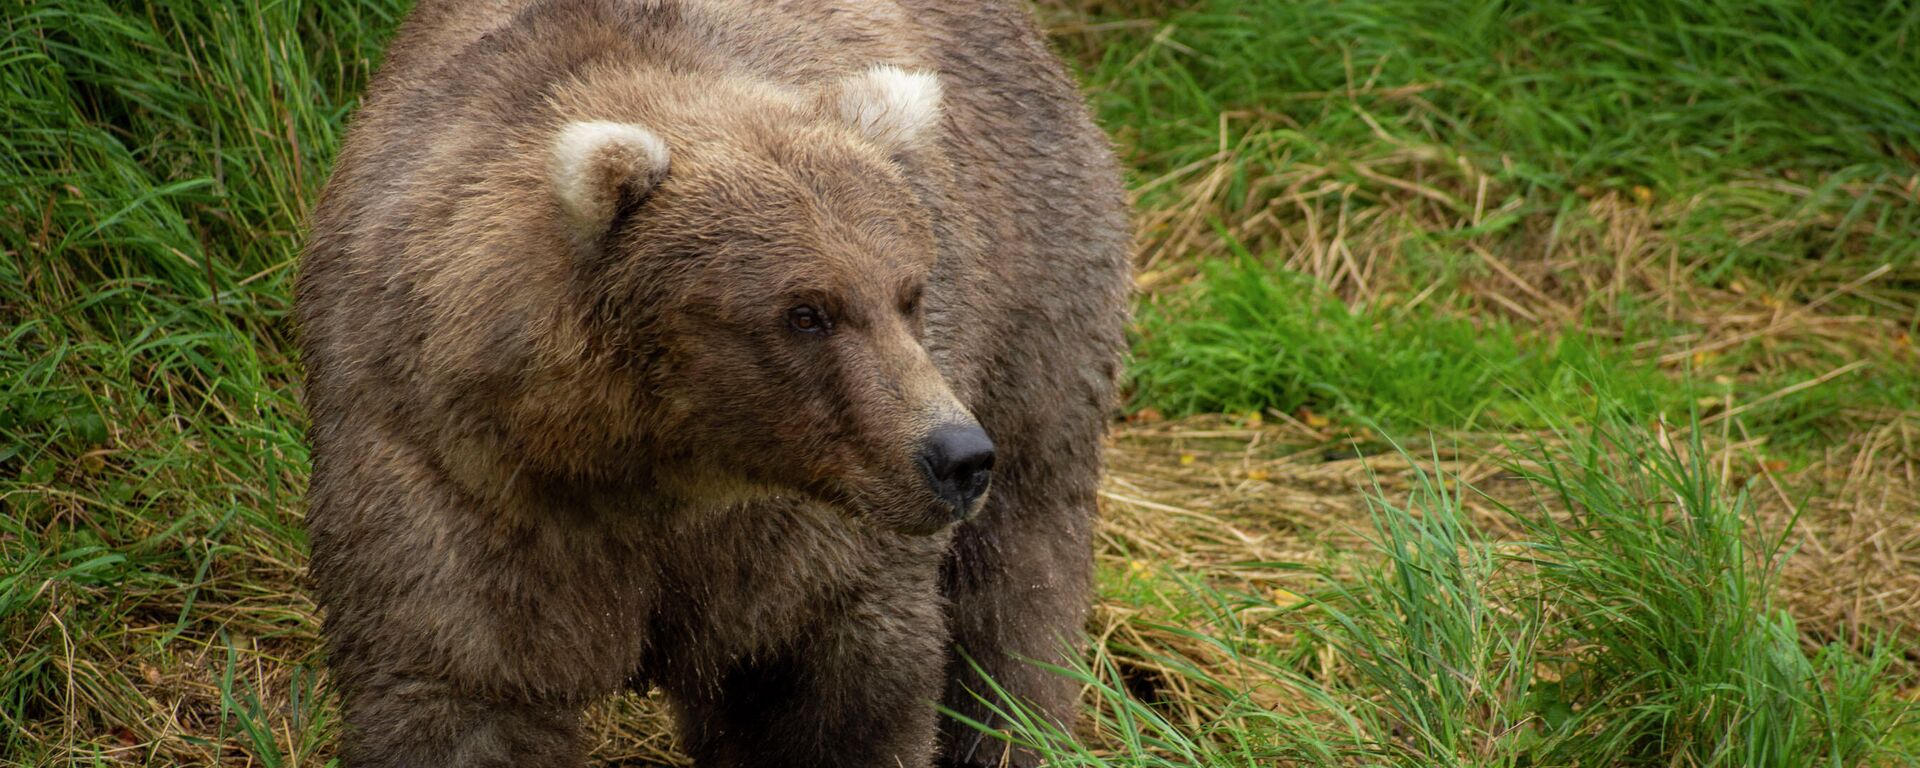 Медведь в национальном парке и заповеднике Катмай в США  - Sputnik Литва, 1920, 10.10.2021